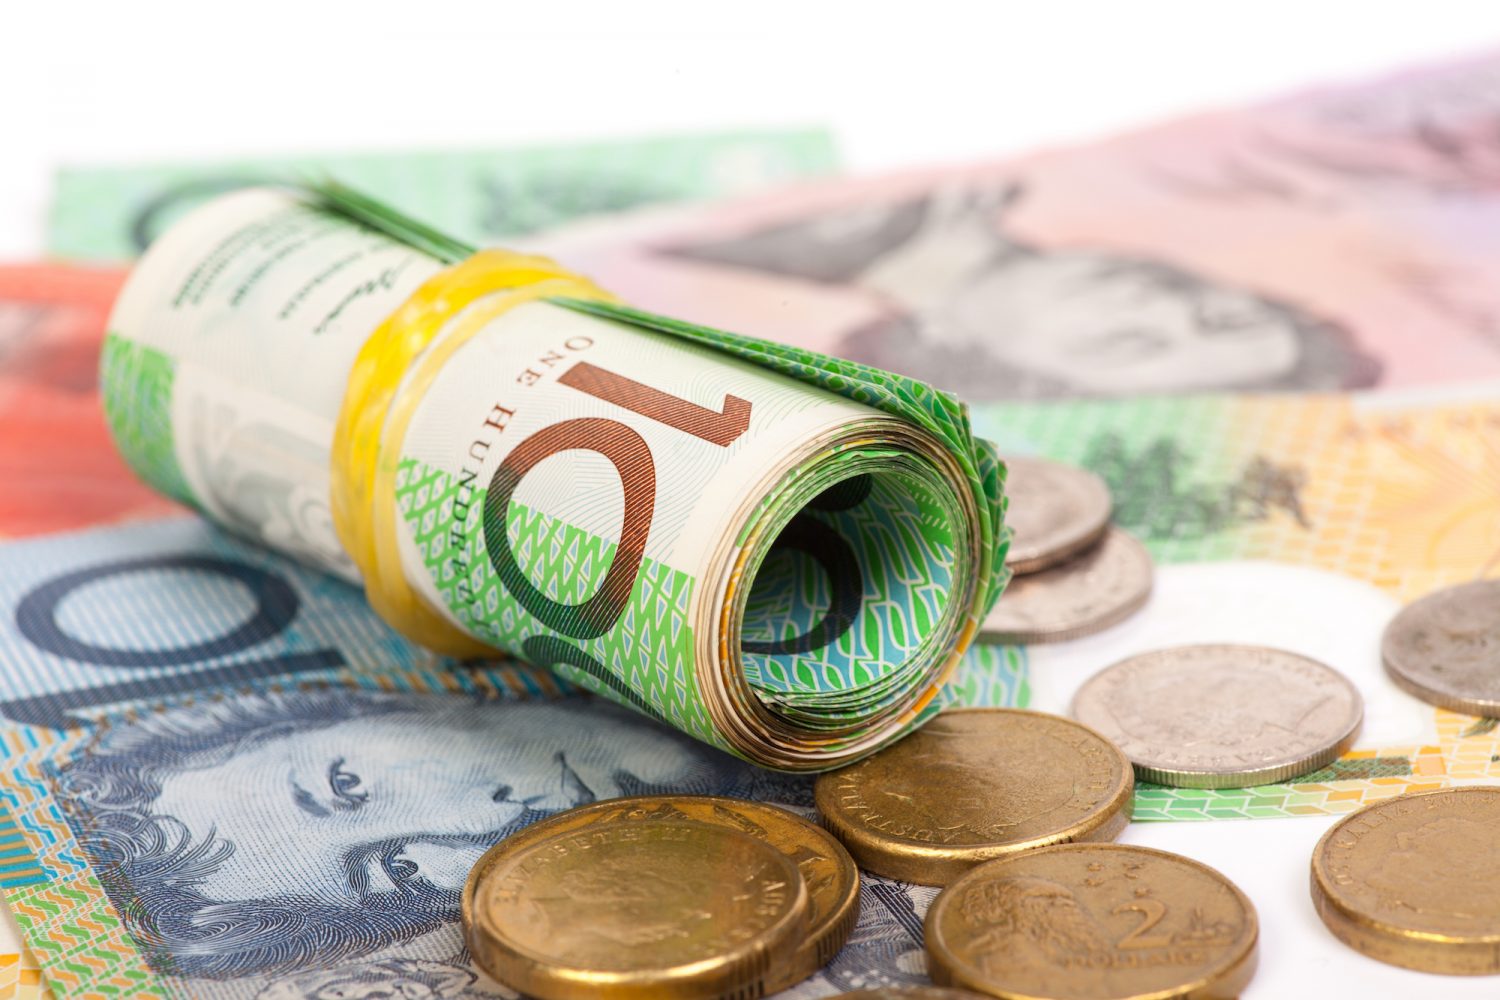 Australian Securities Watchdog Halts ICO Seeking To Raise $50 Million